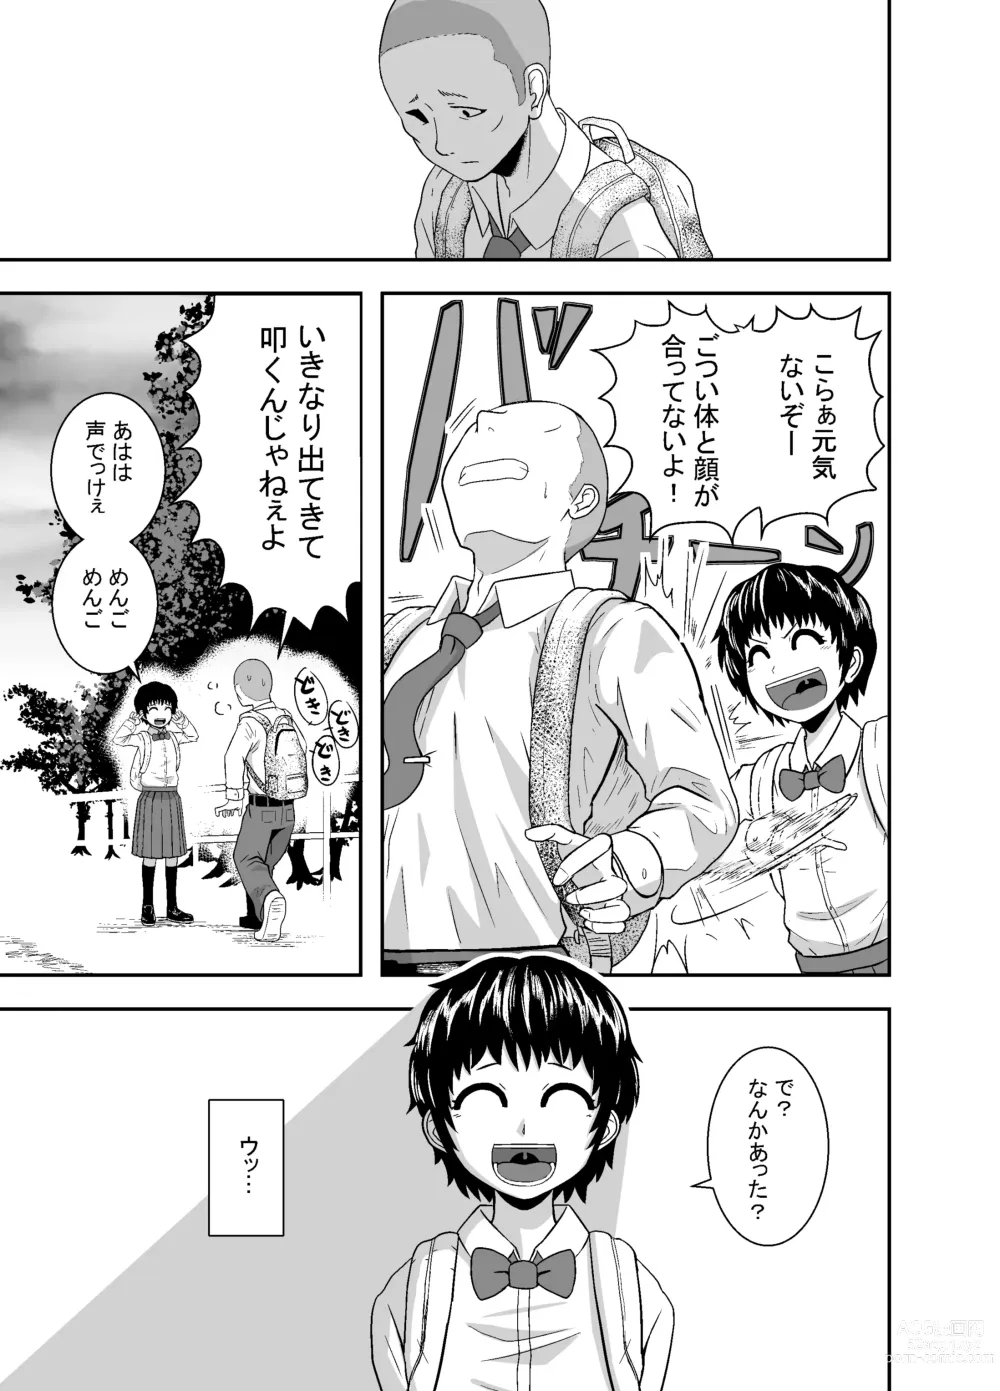 Page 14 of doujinshi Kimi ga Yarareru Kurai nara ~Genkikko Crisis~